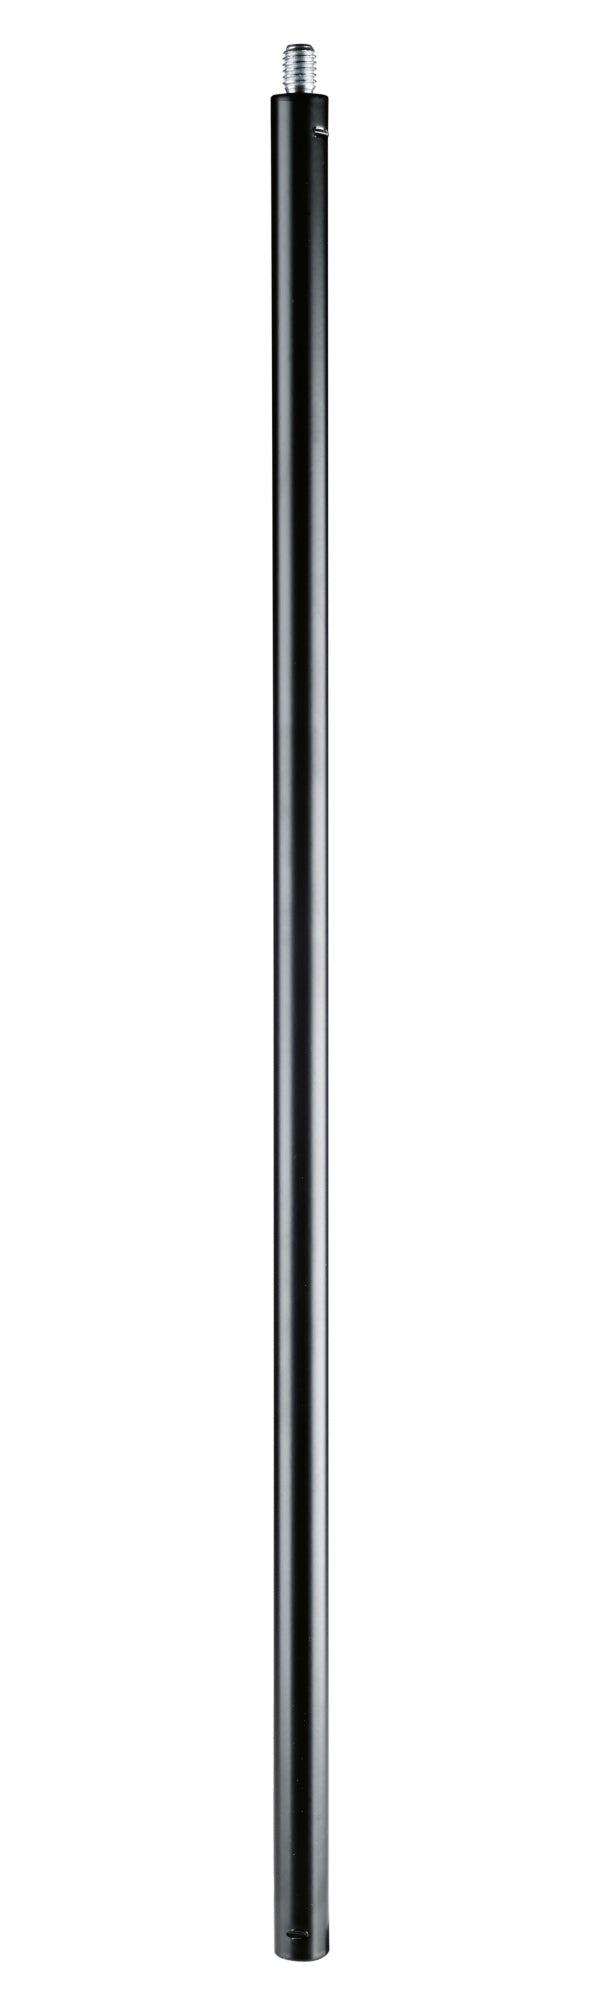 K&M 20004 Tige d'extension pour pieds de microphone (noir)